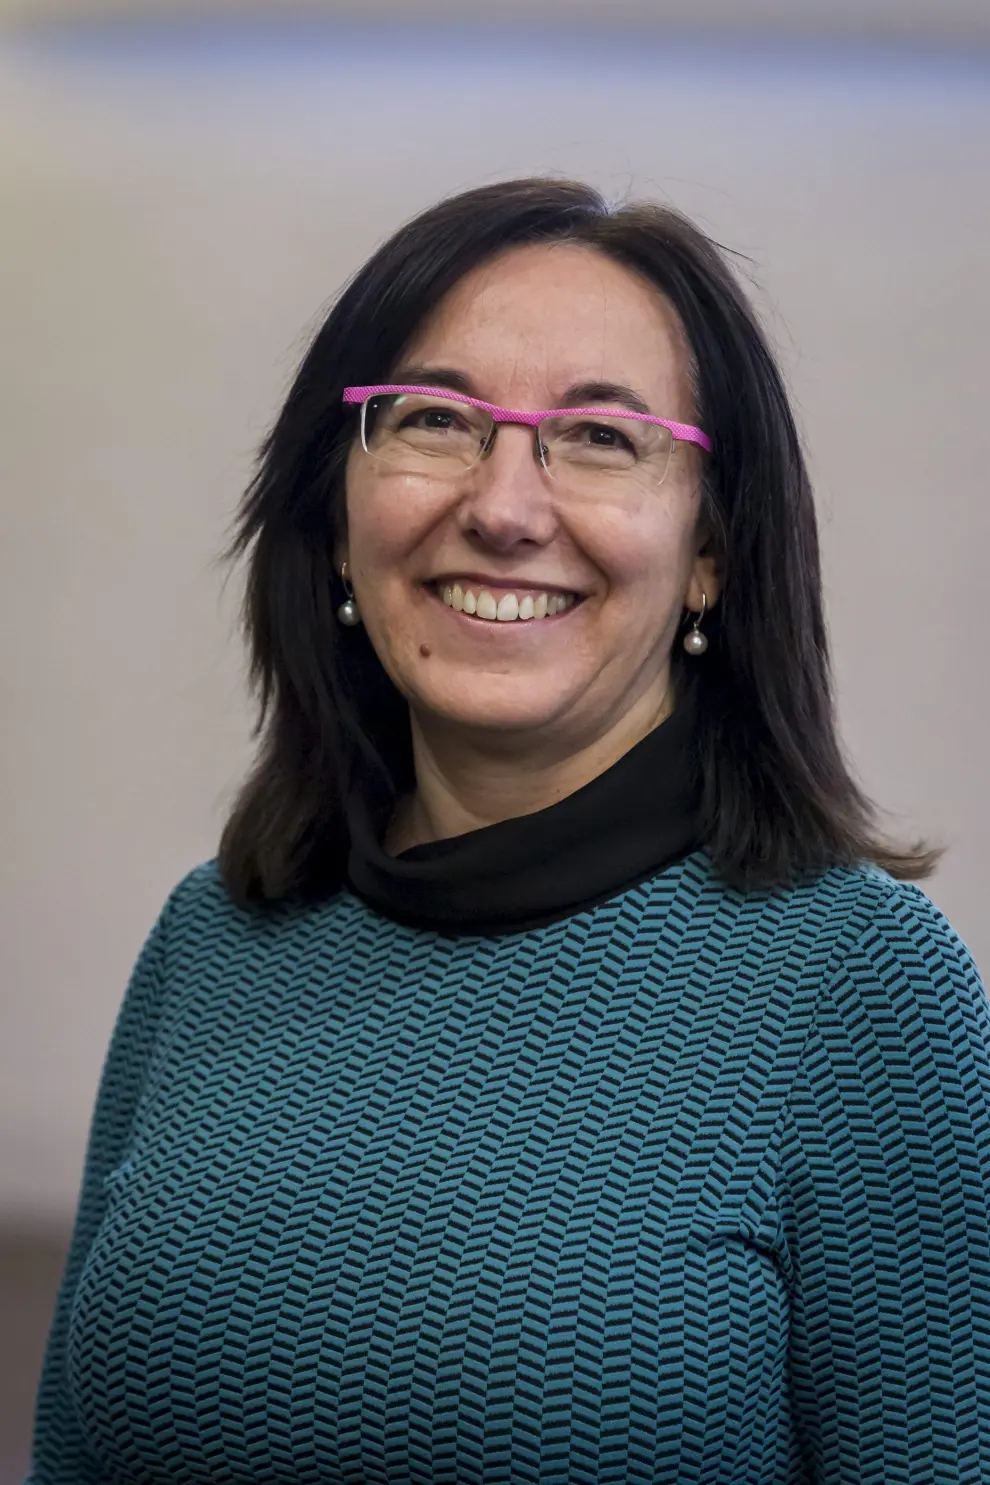 Es investigadora del Instituto de Síntesis Química y Catálisis Homogénea de Zaragoza. En 2017, fue reconocida como una de las doce mejores químicas del mundo.